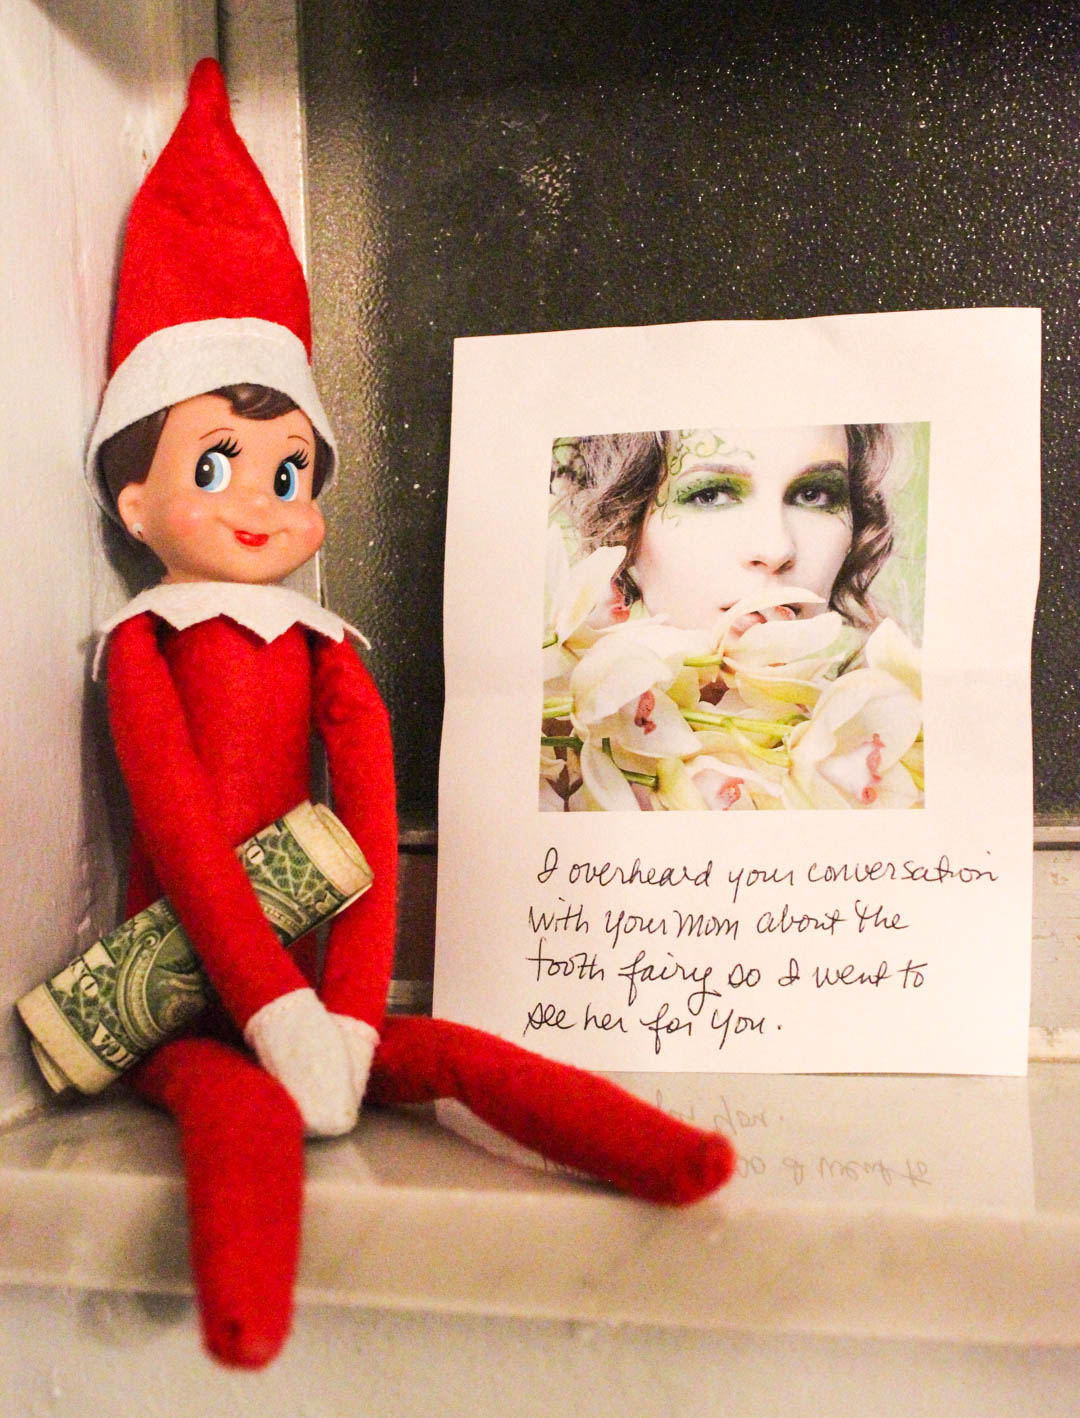 Elf on a Shelf